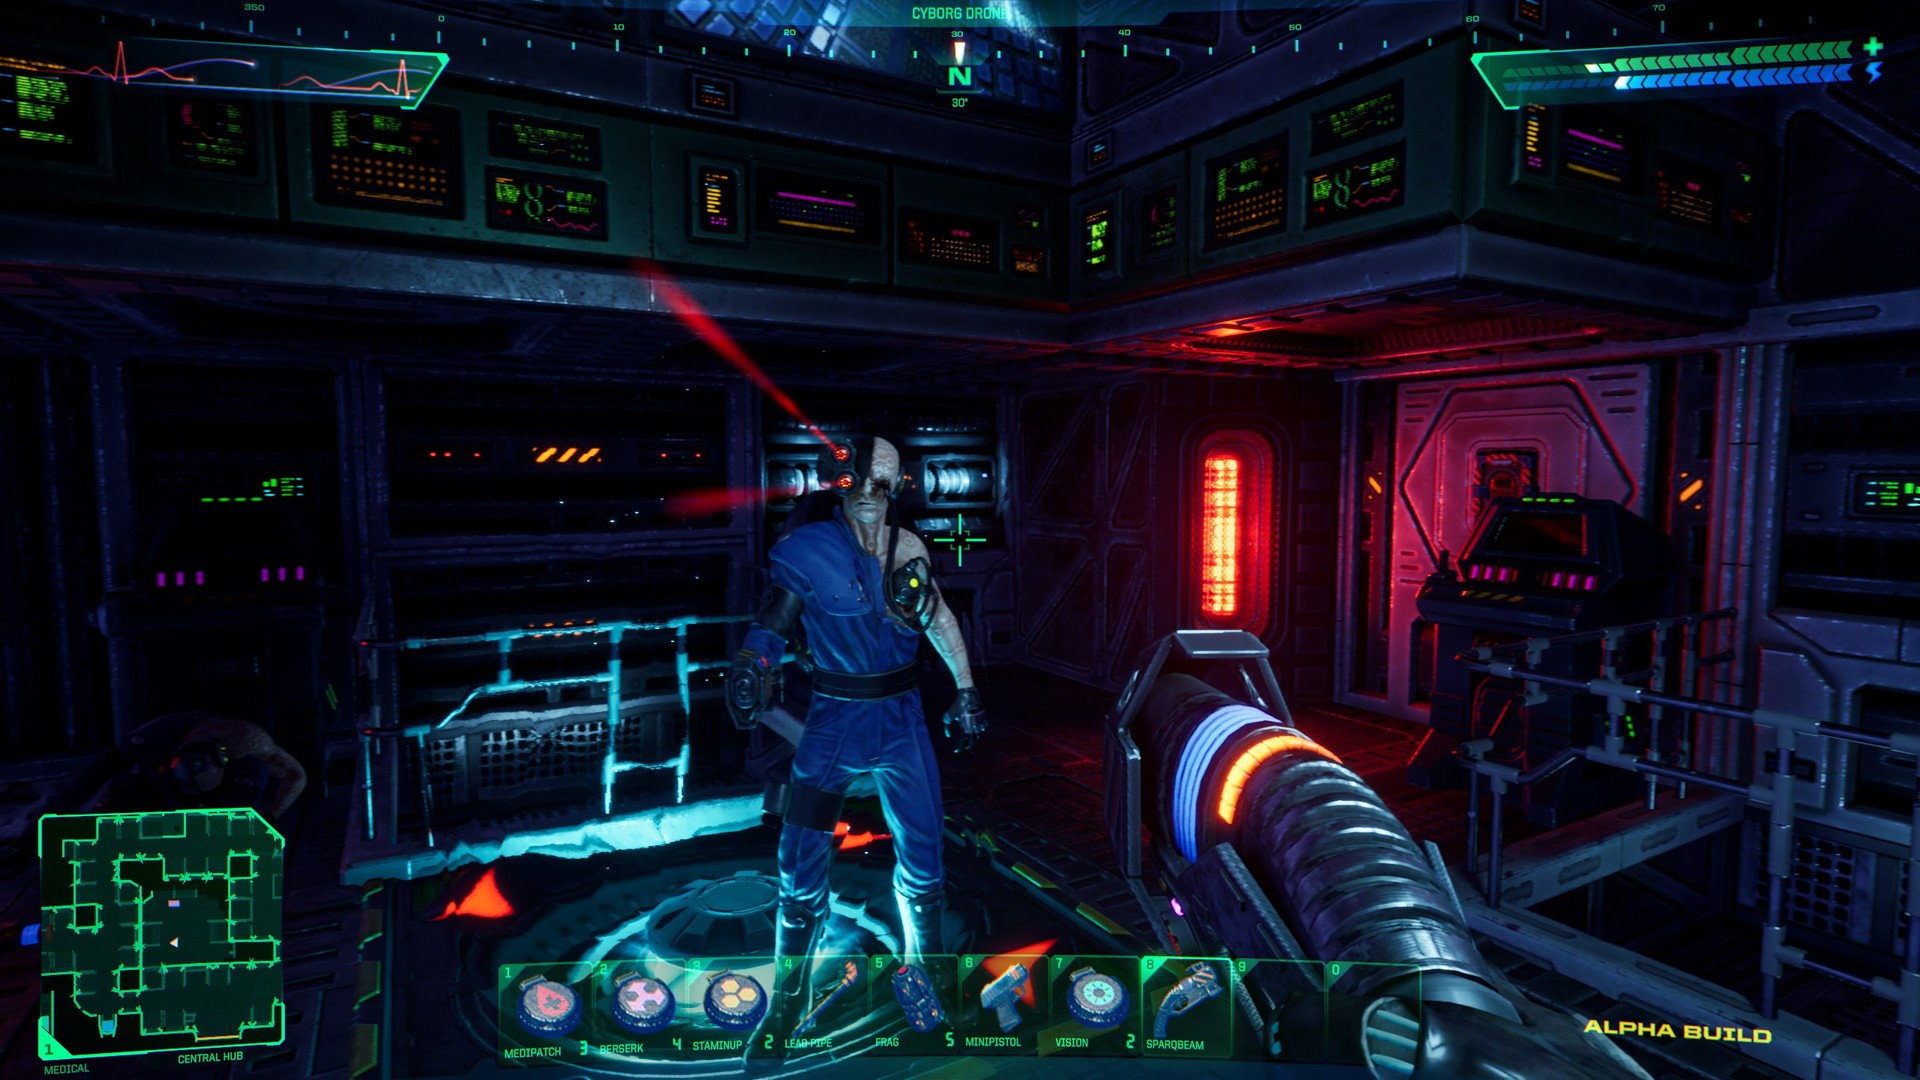 El remake de System Shock llegará en 2022, aquí hay 15 imágenes del juego.